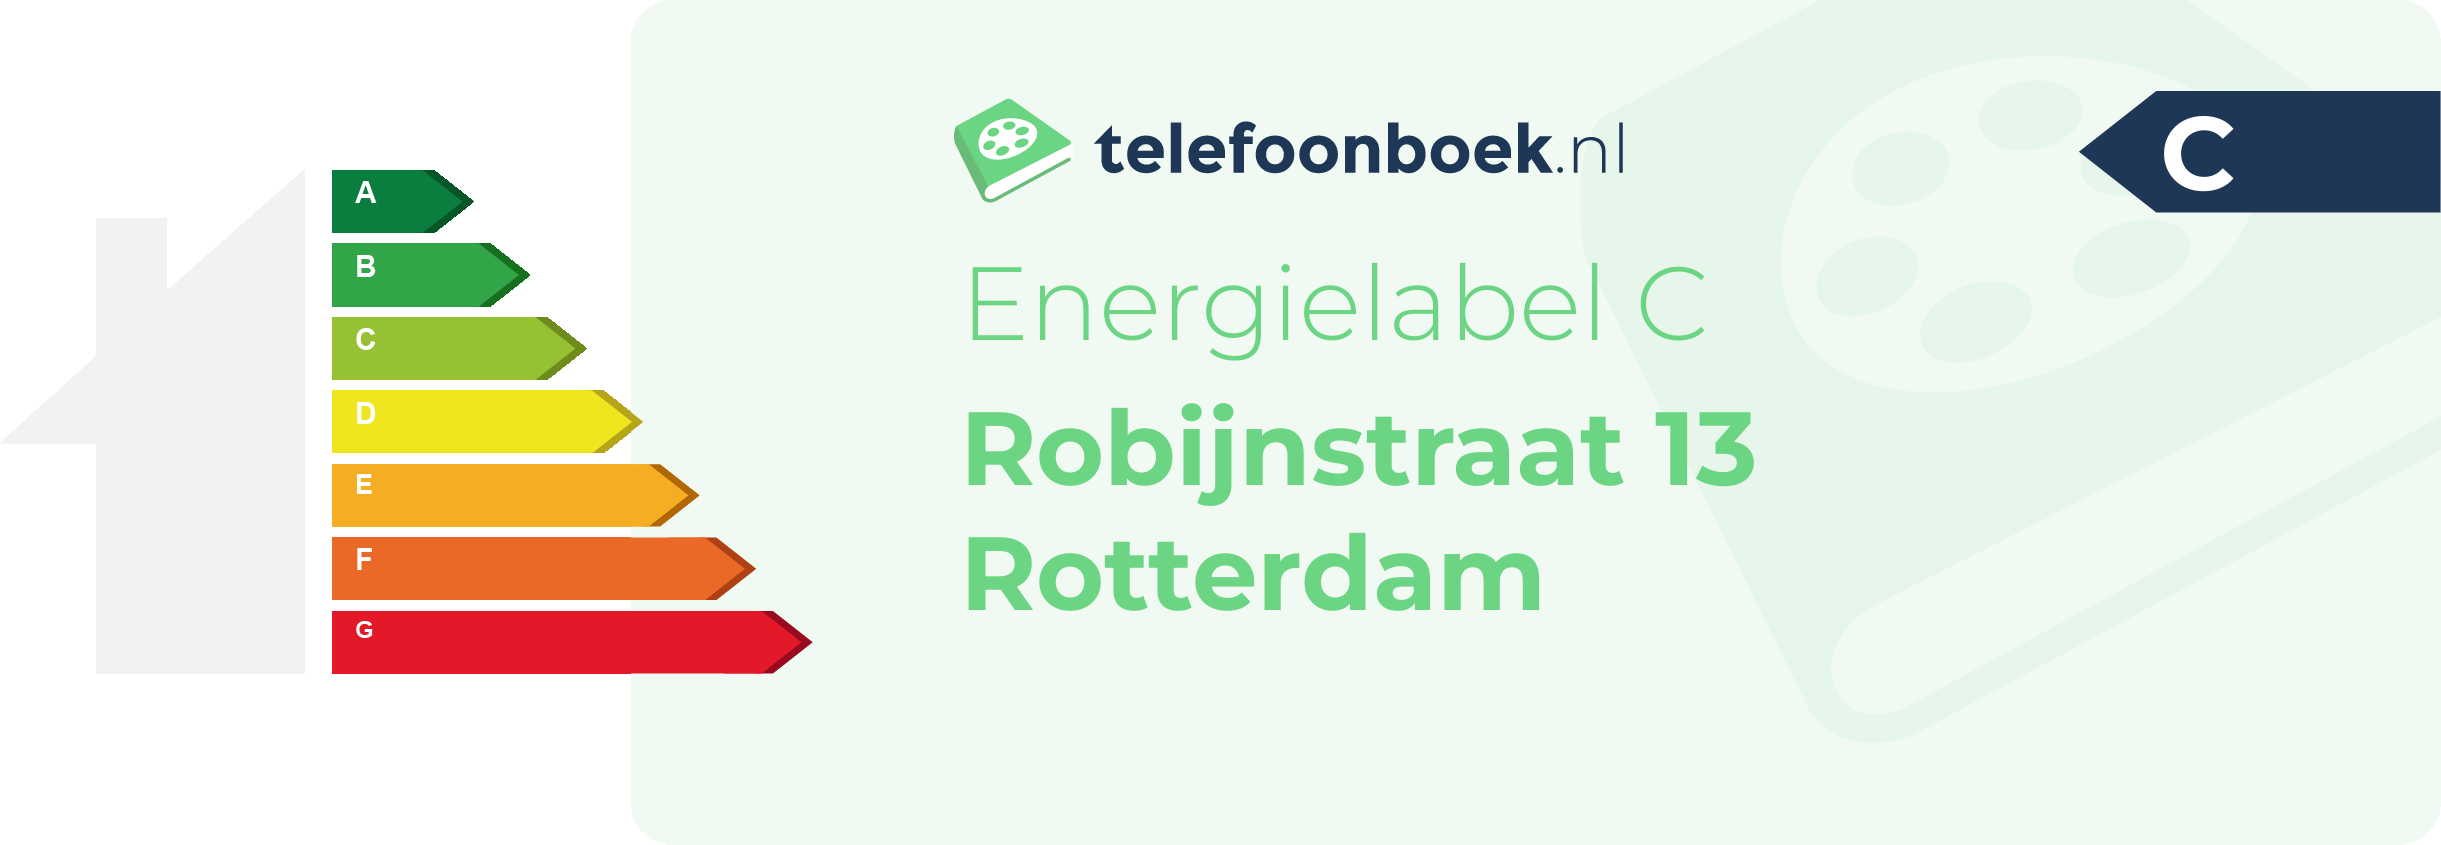 Energielabel Robijnstraat 13 Rotterdam